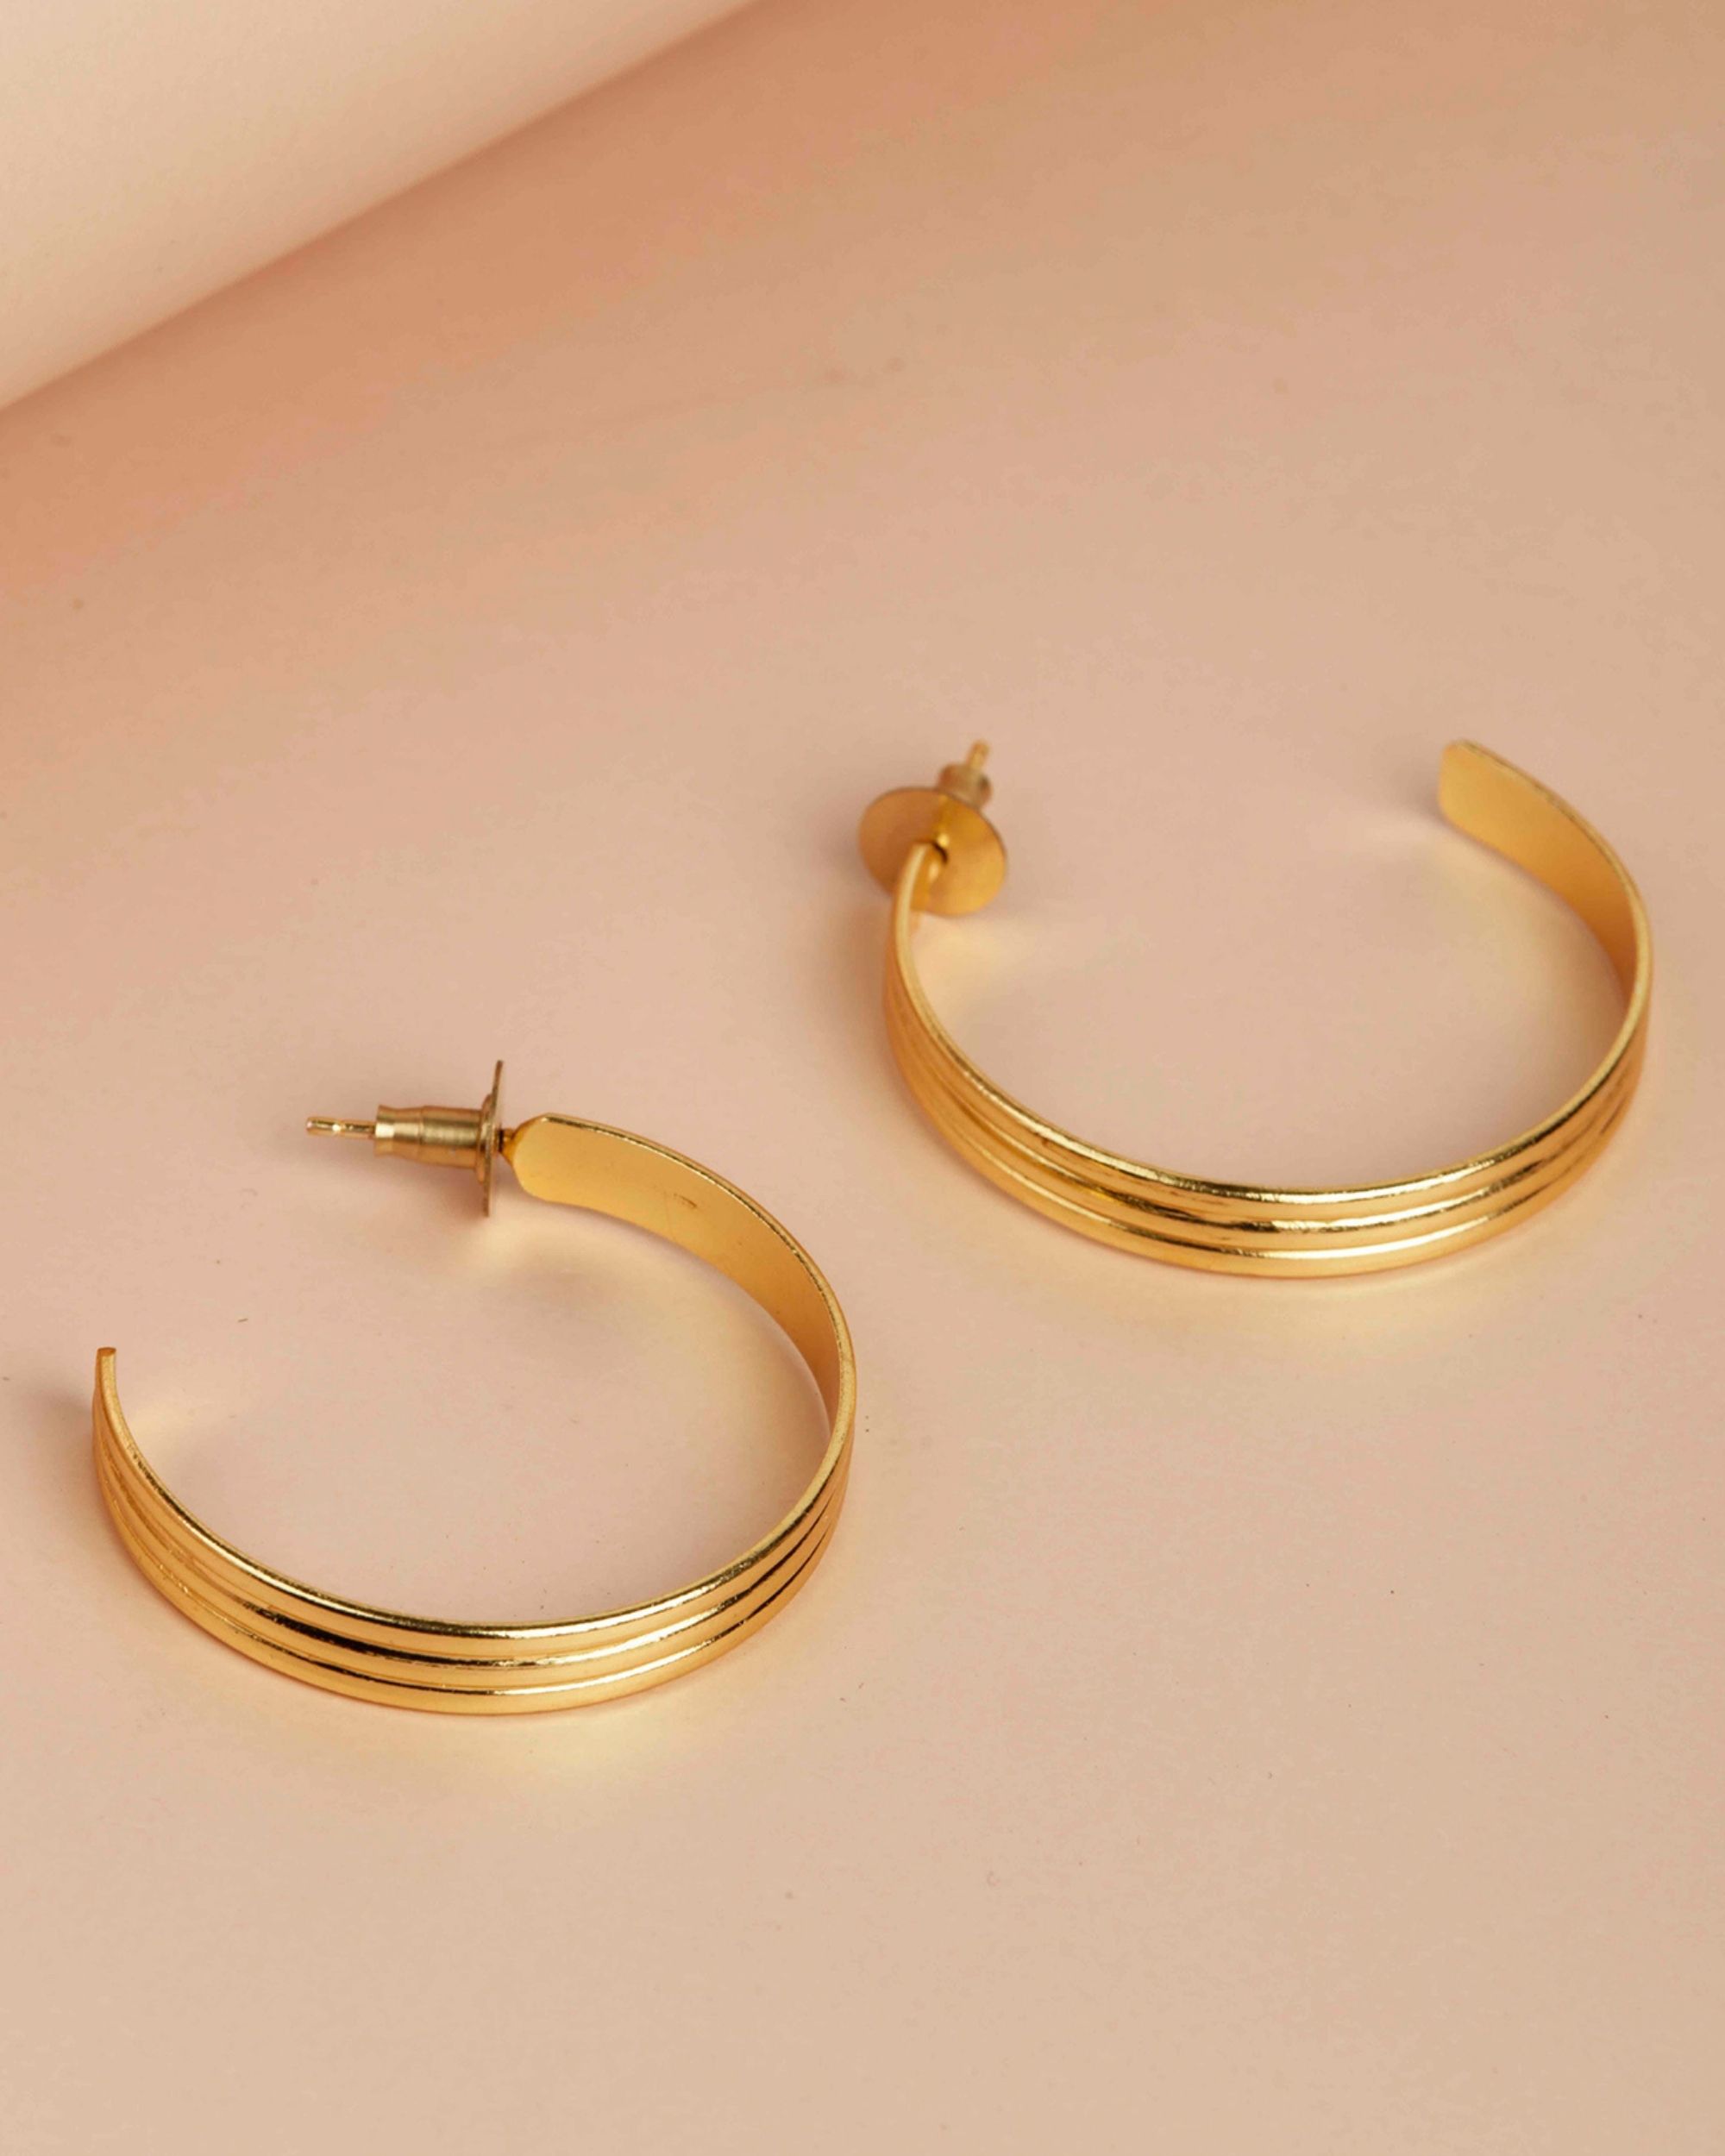 Triple layered hoop earrings